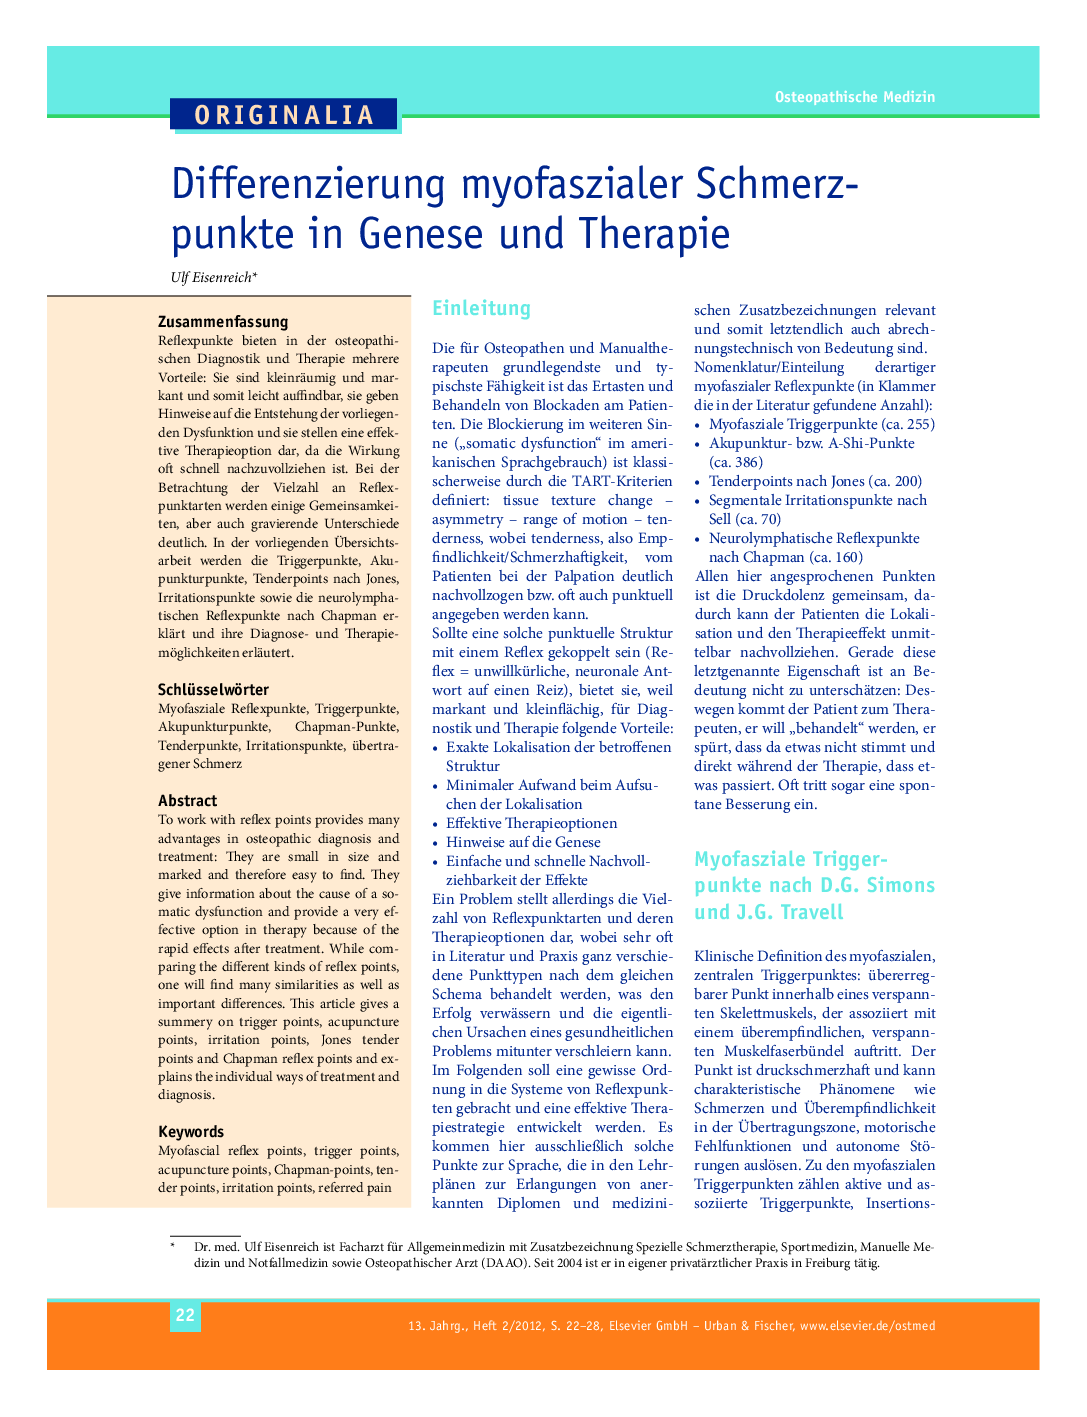 Differenzierung myofaszialer Schmerzpunkte in Genese und Therapie